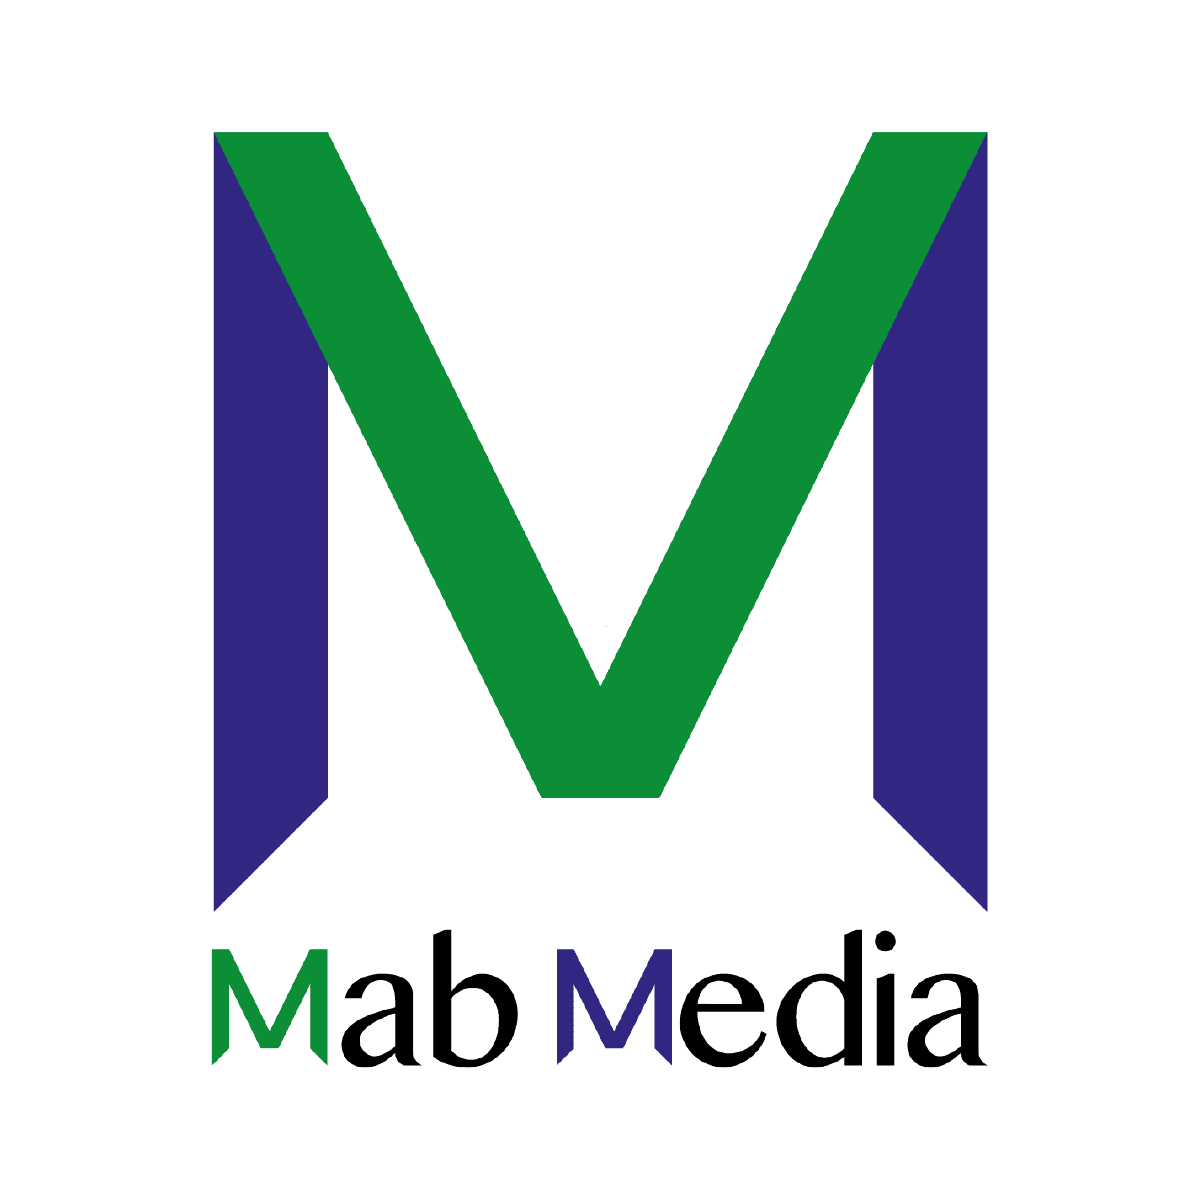 Mab Media